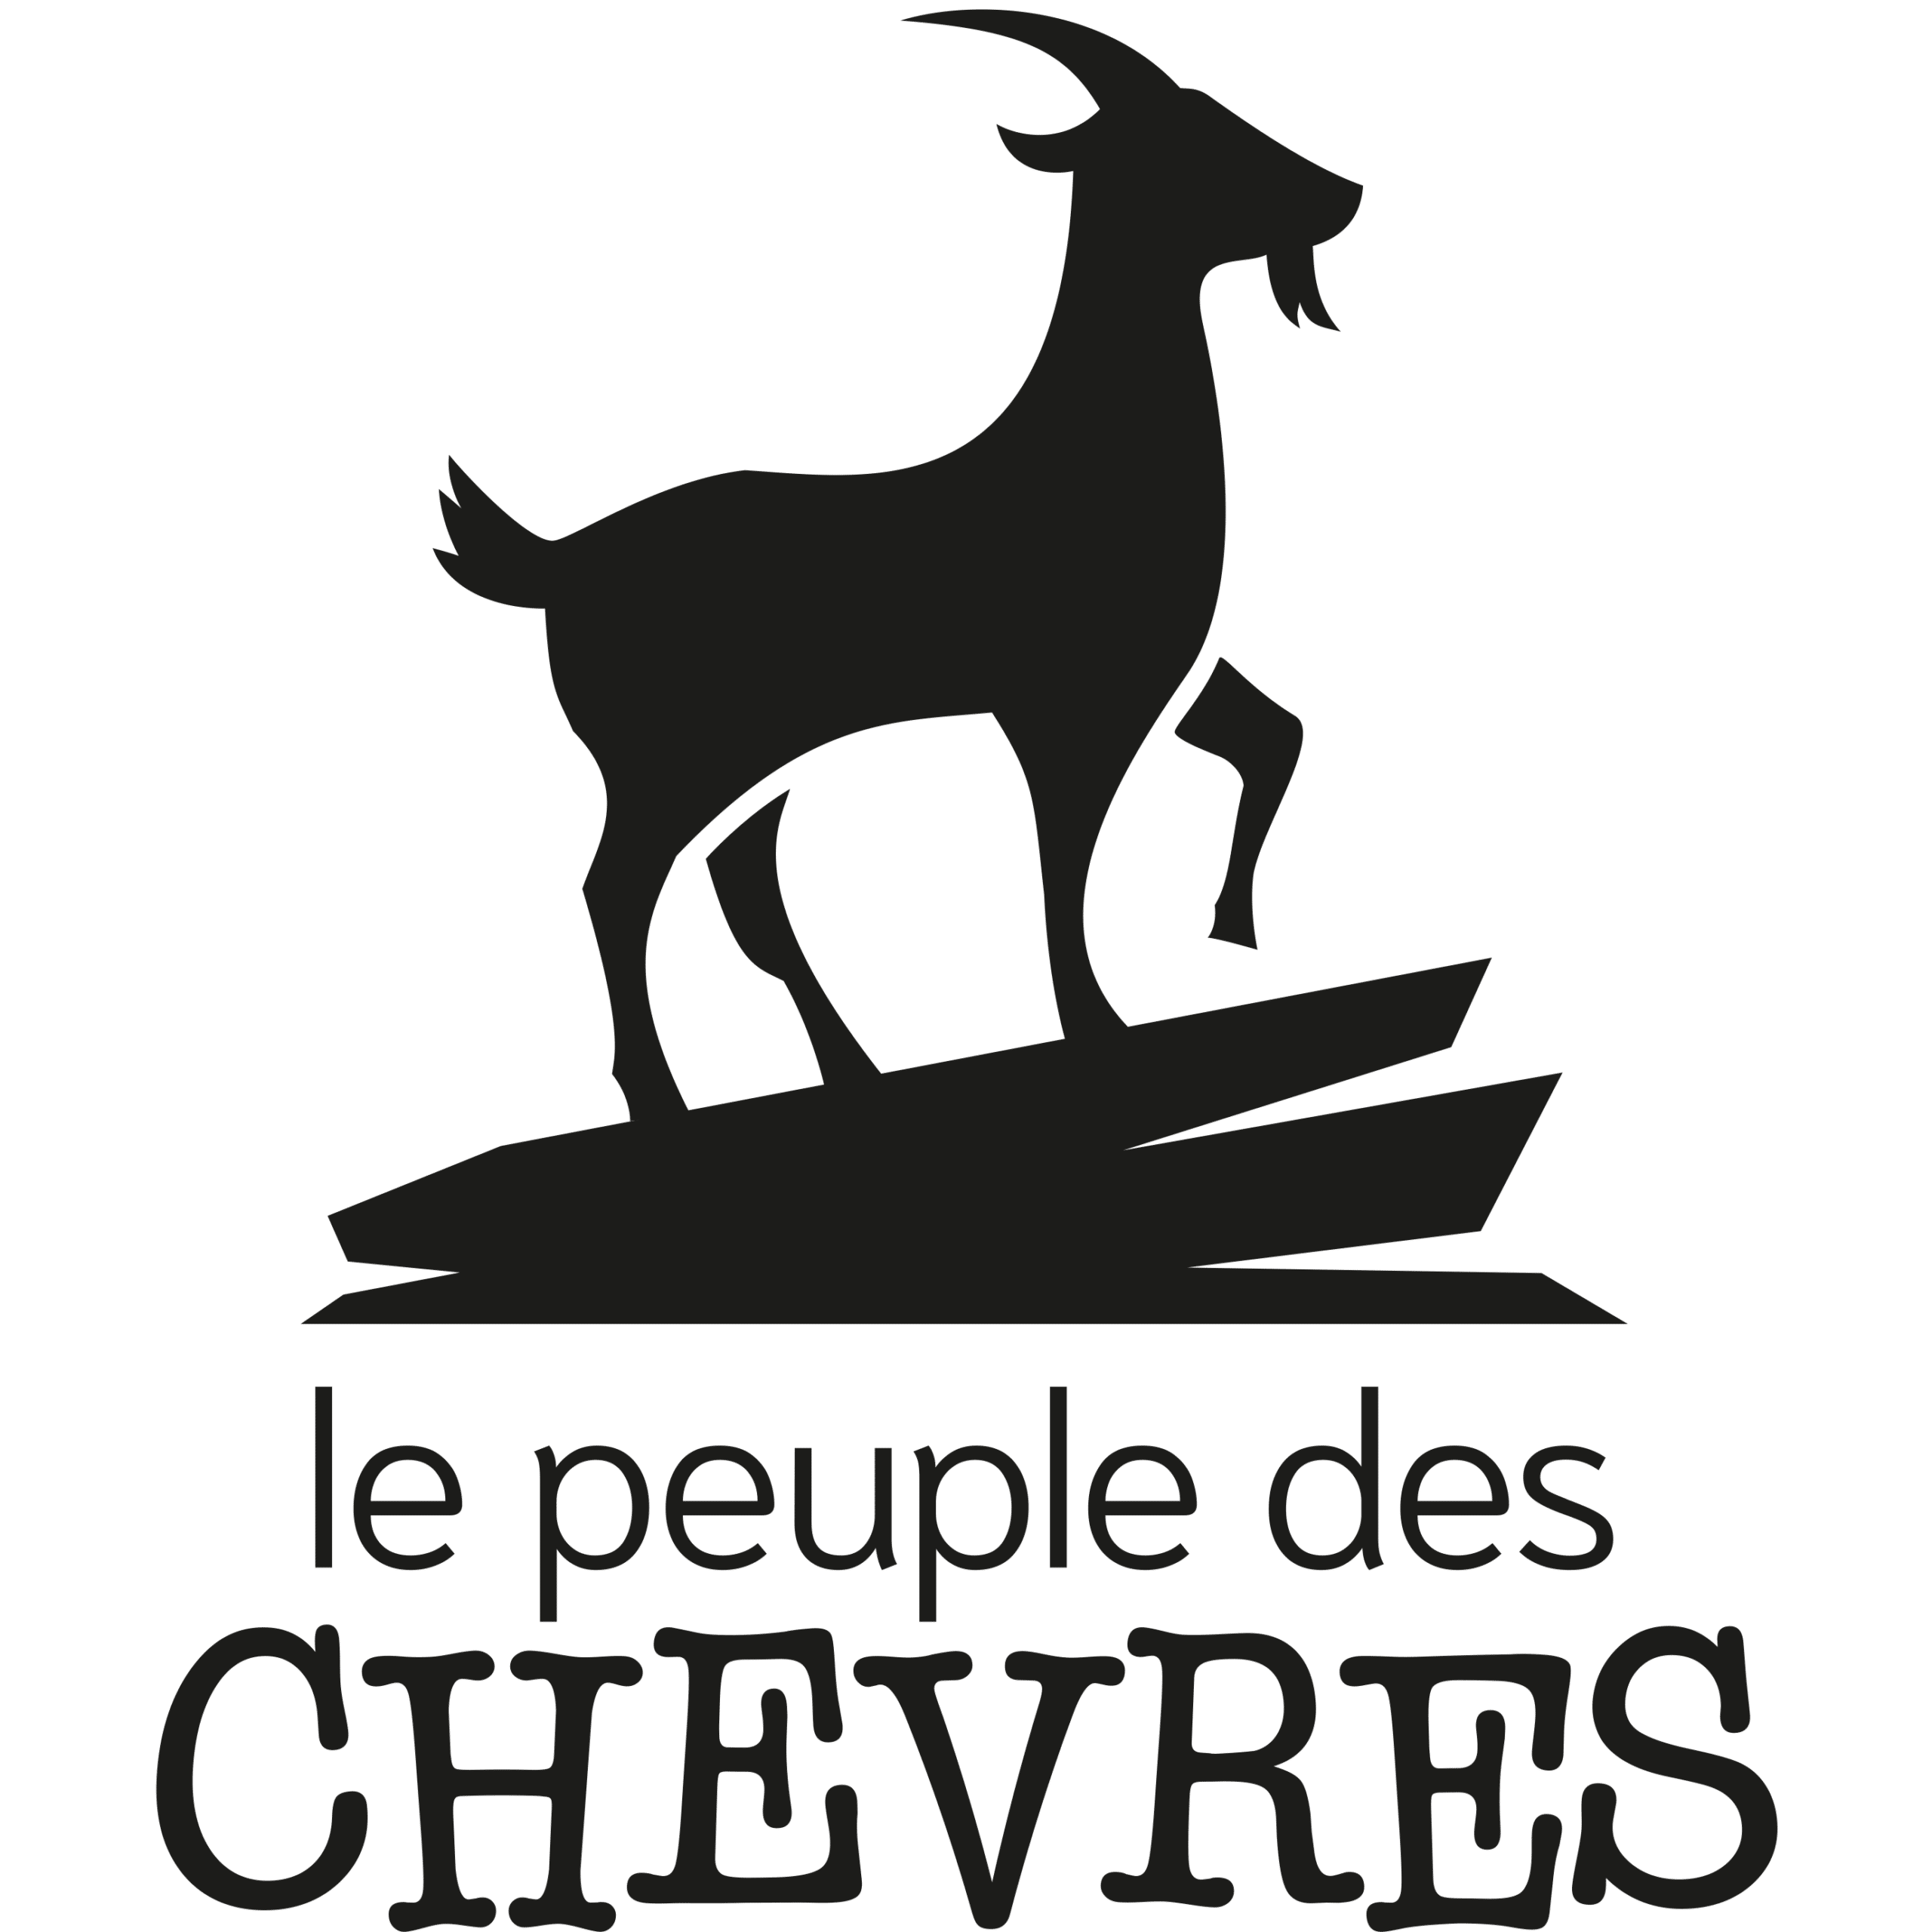 <a href="http://lepeupledeschevres.fr/accueil/" target="_blank">Le Peulple des chèvres</a>